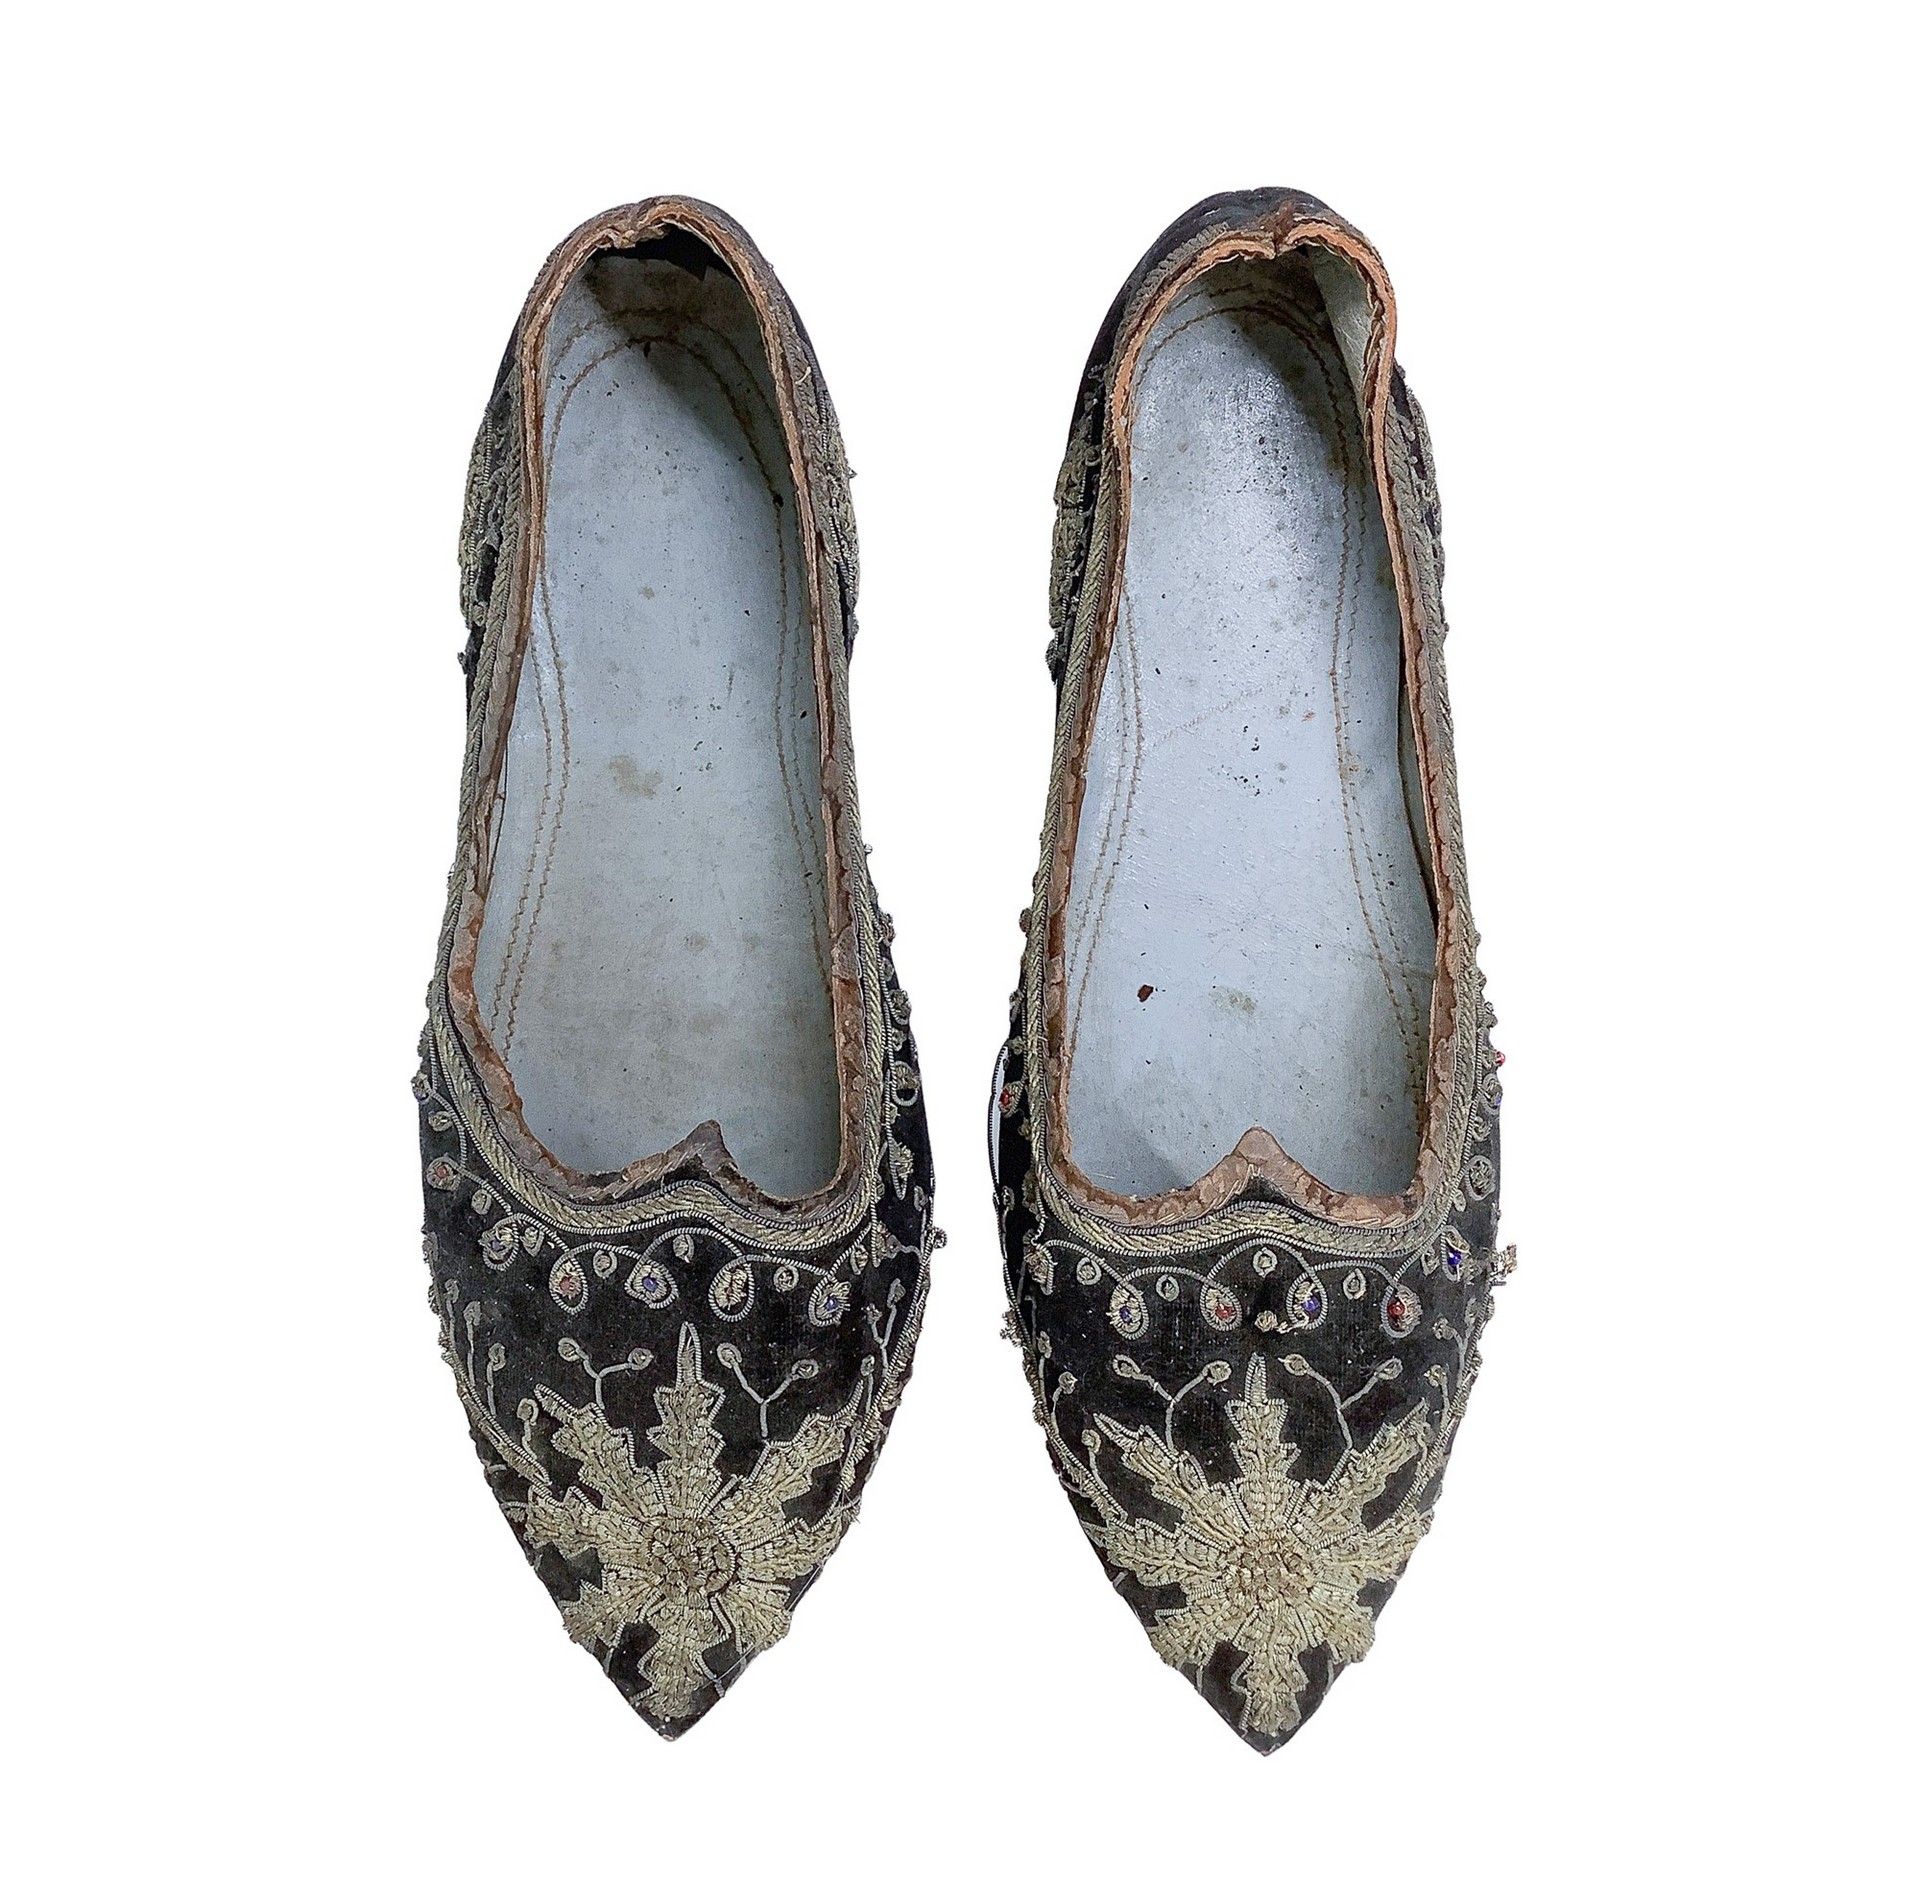 Null Scarpe pantofola d'epoca, scarpe nobili ricamate dell'inizio del 19° secolo